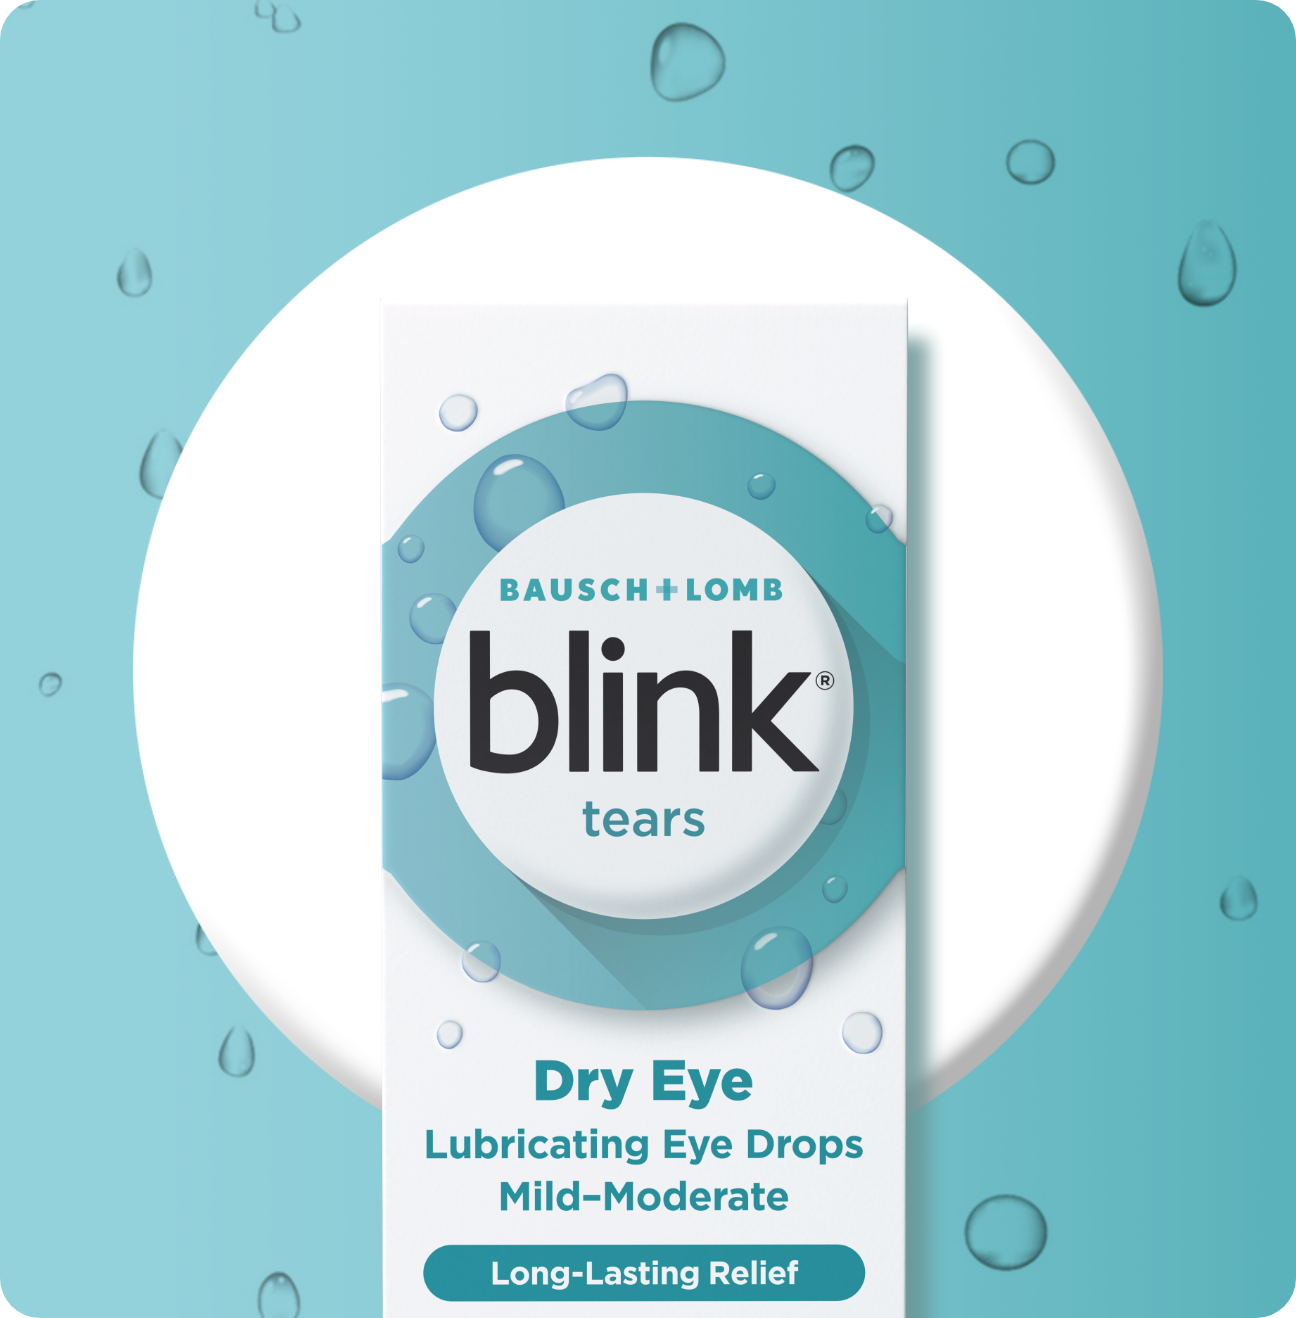 Blink Tears Lubricating Eye Drops package